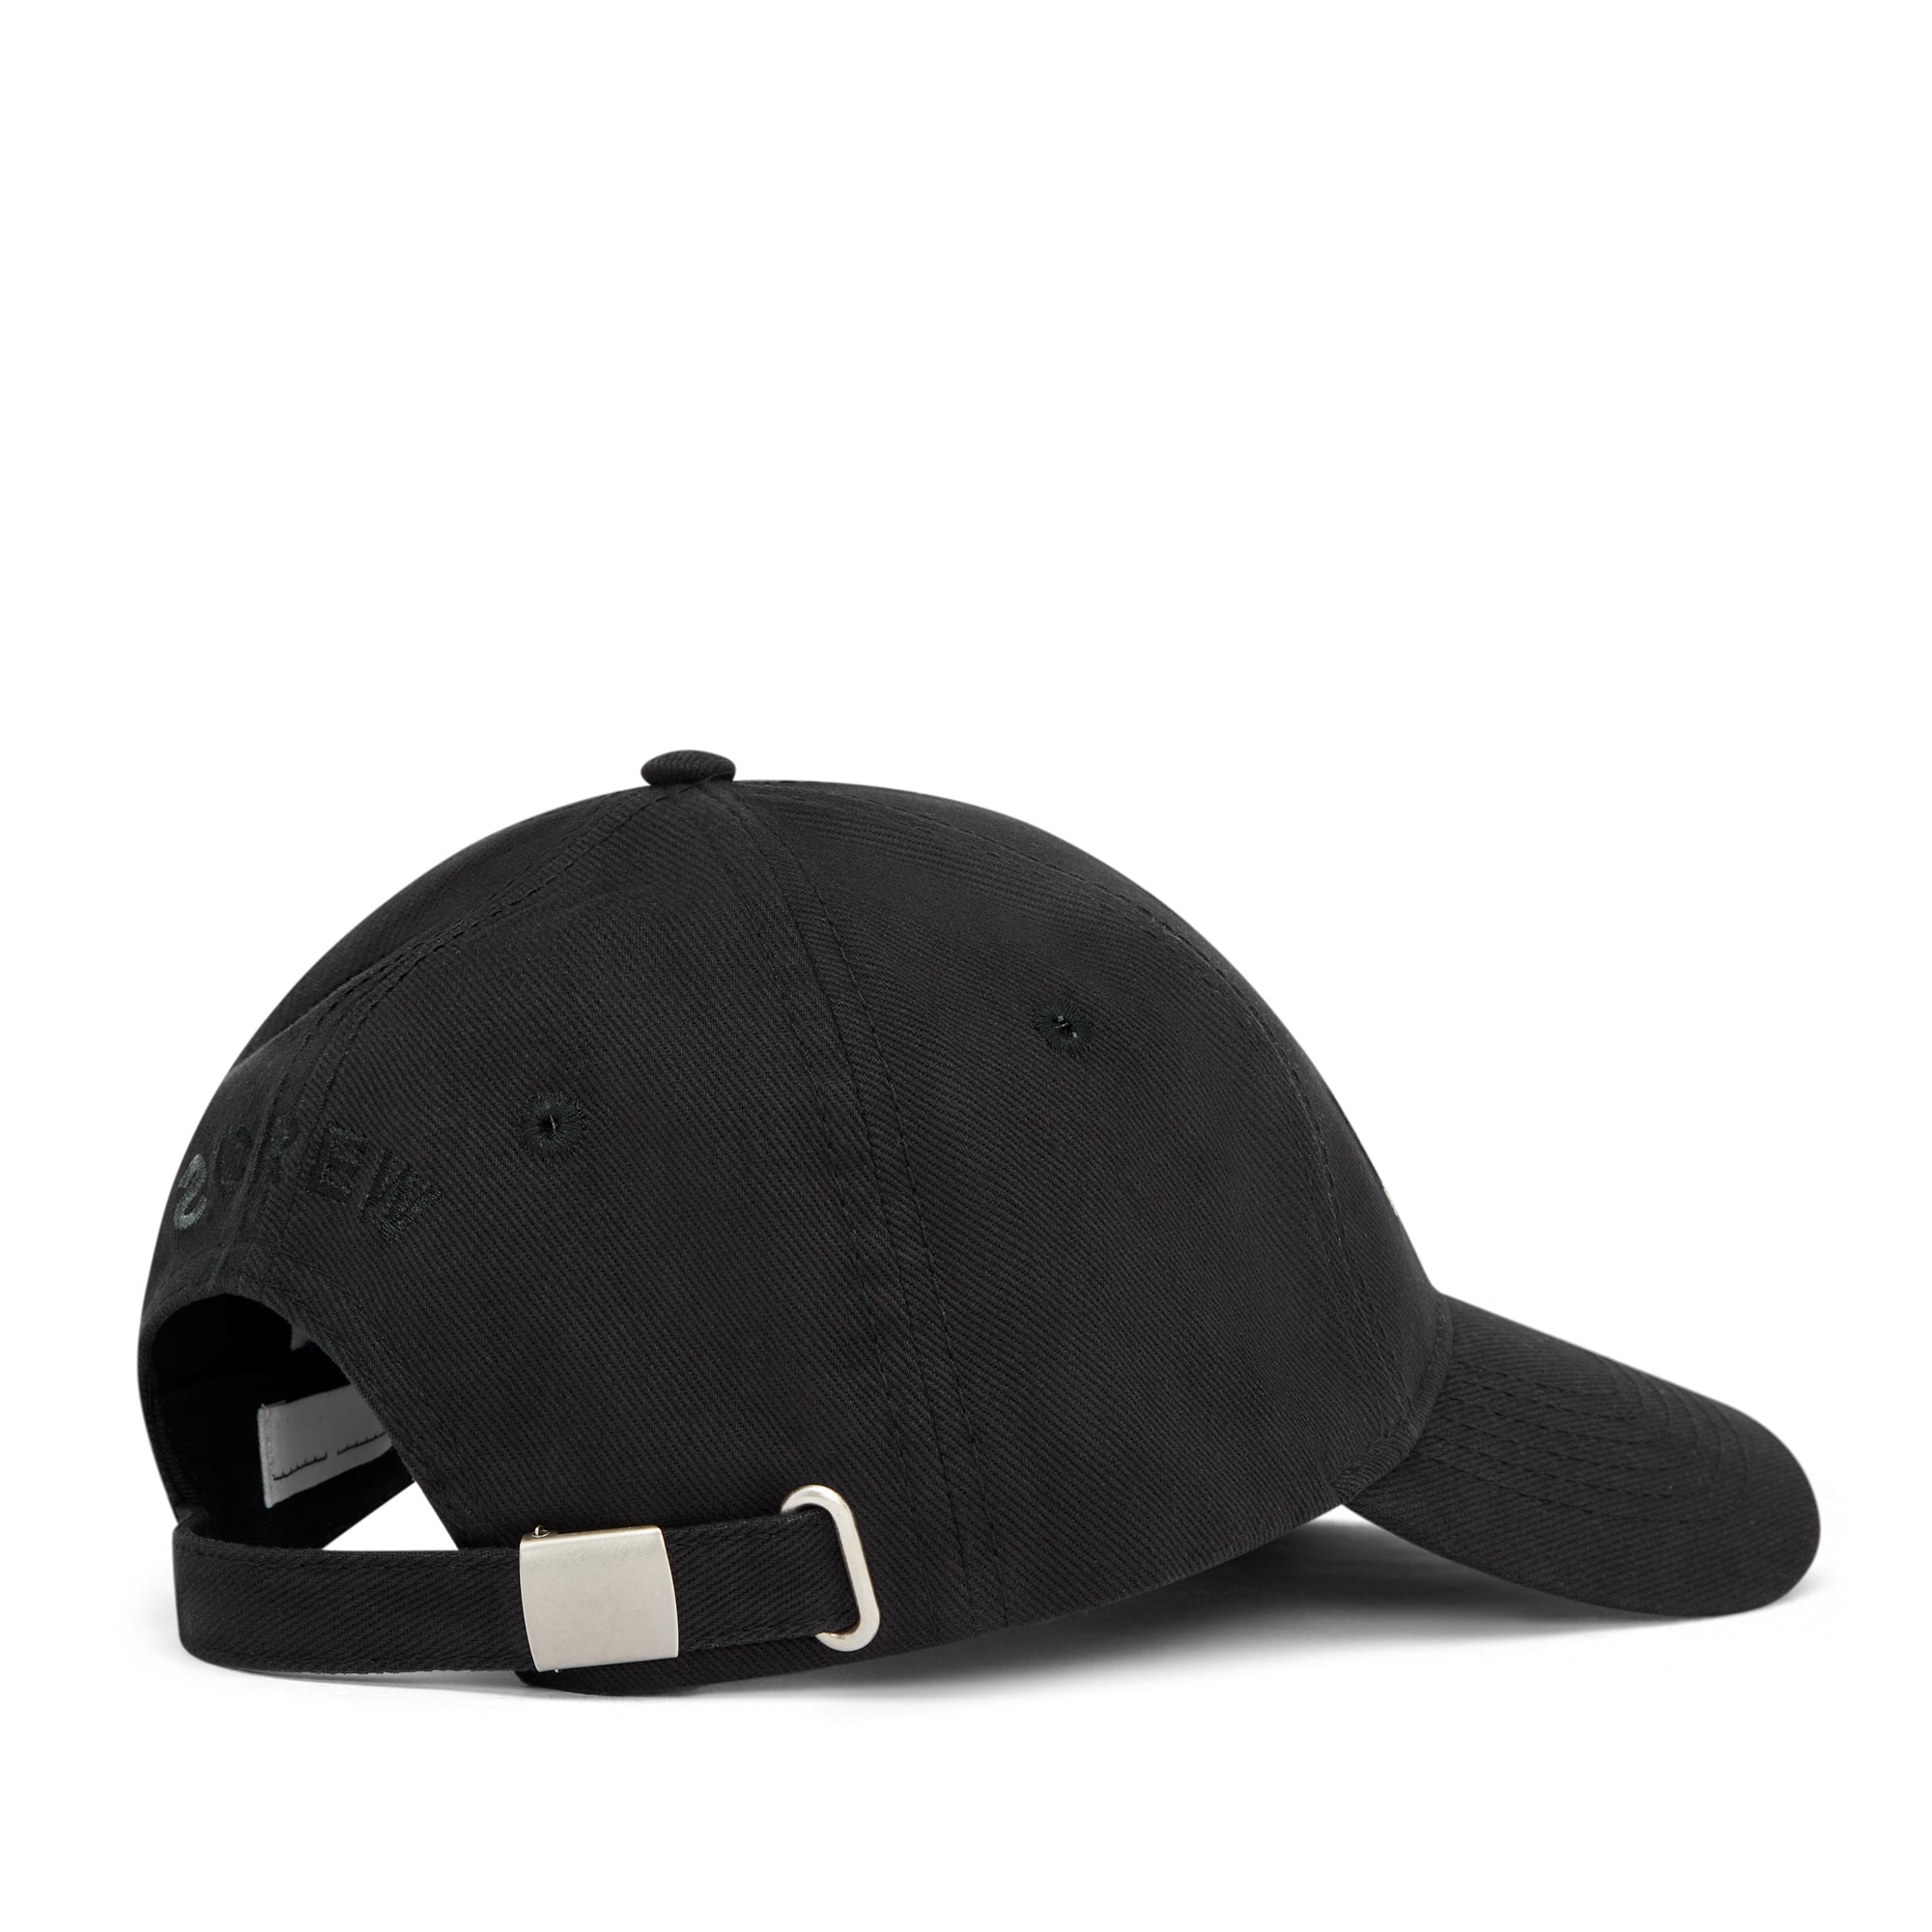 Random Identities - Men’s Sponsored Baseball Cap - (Black)